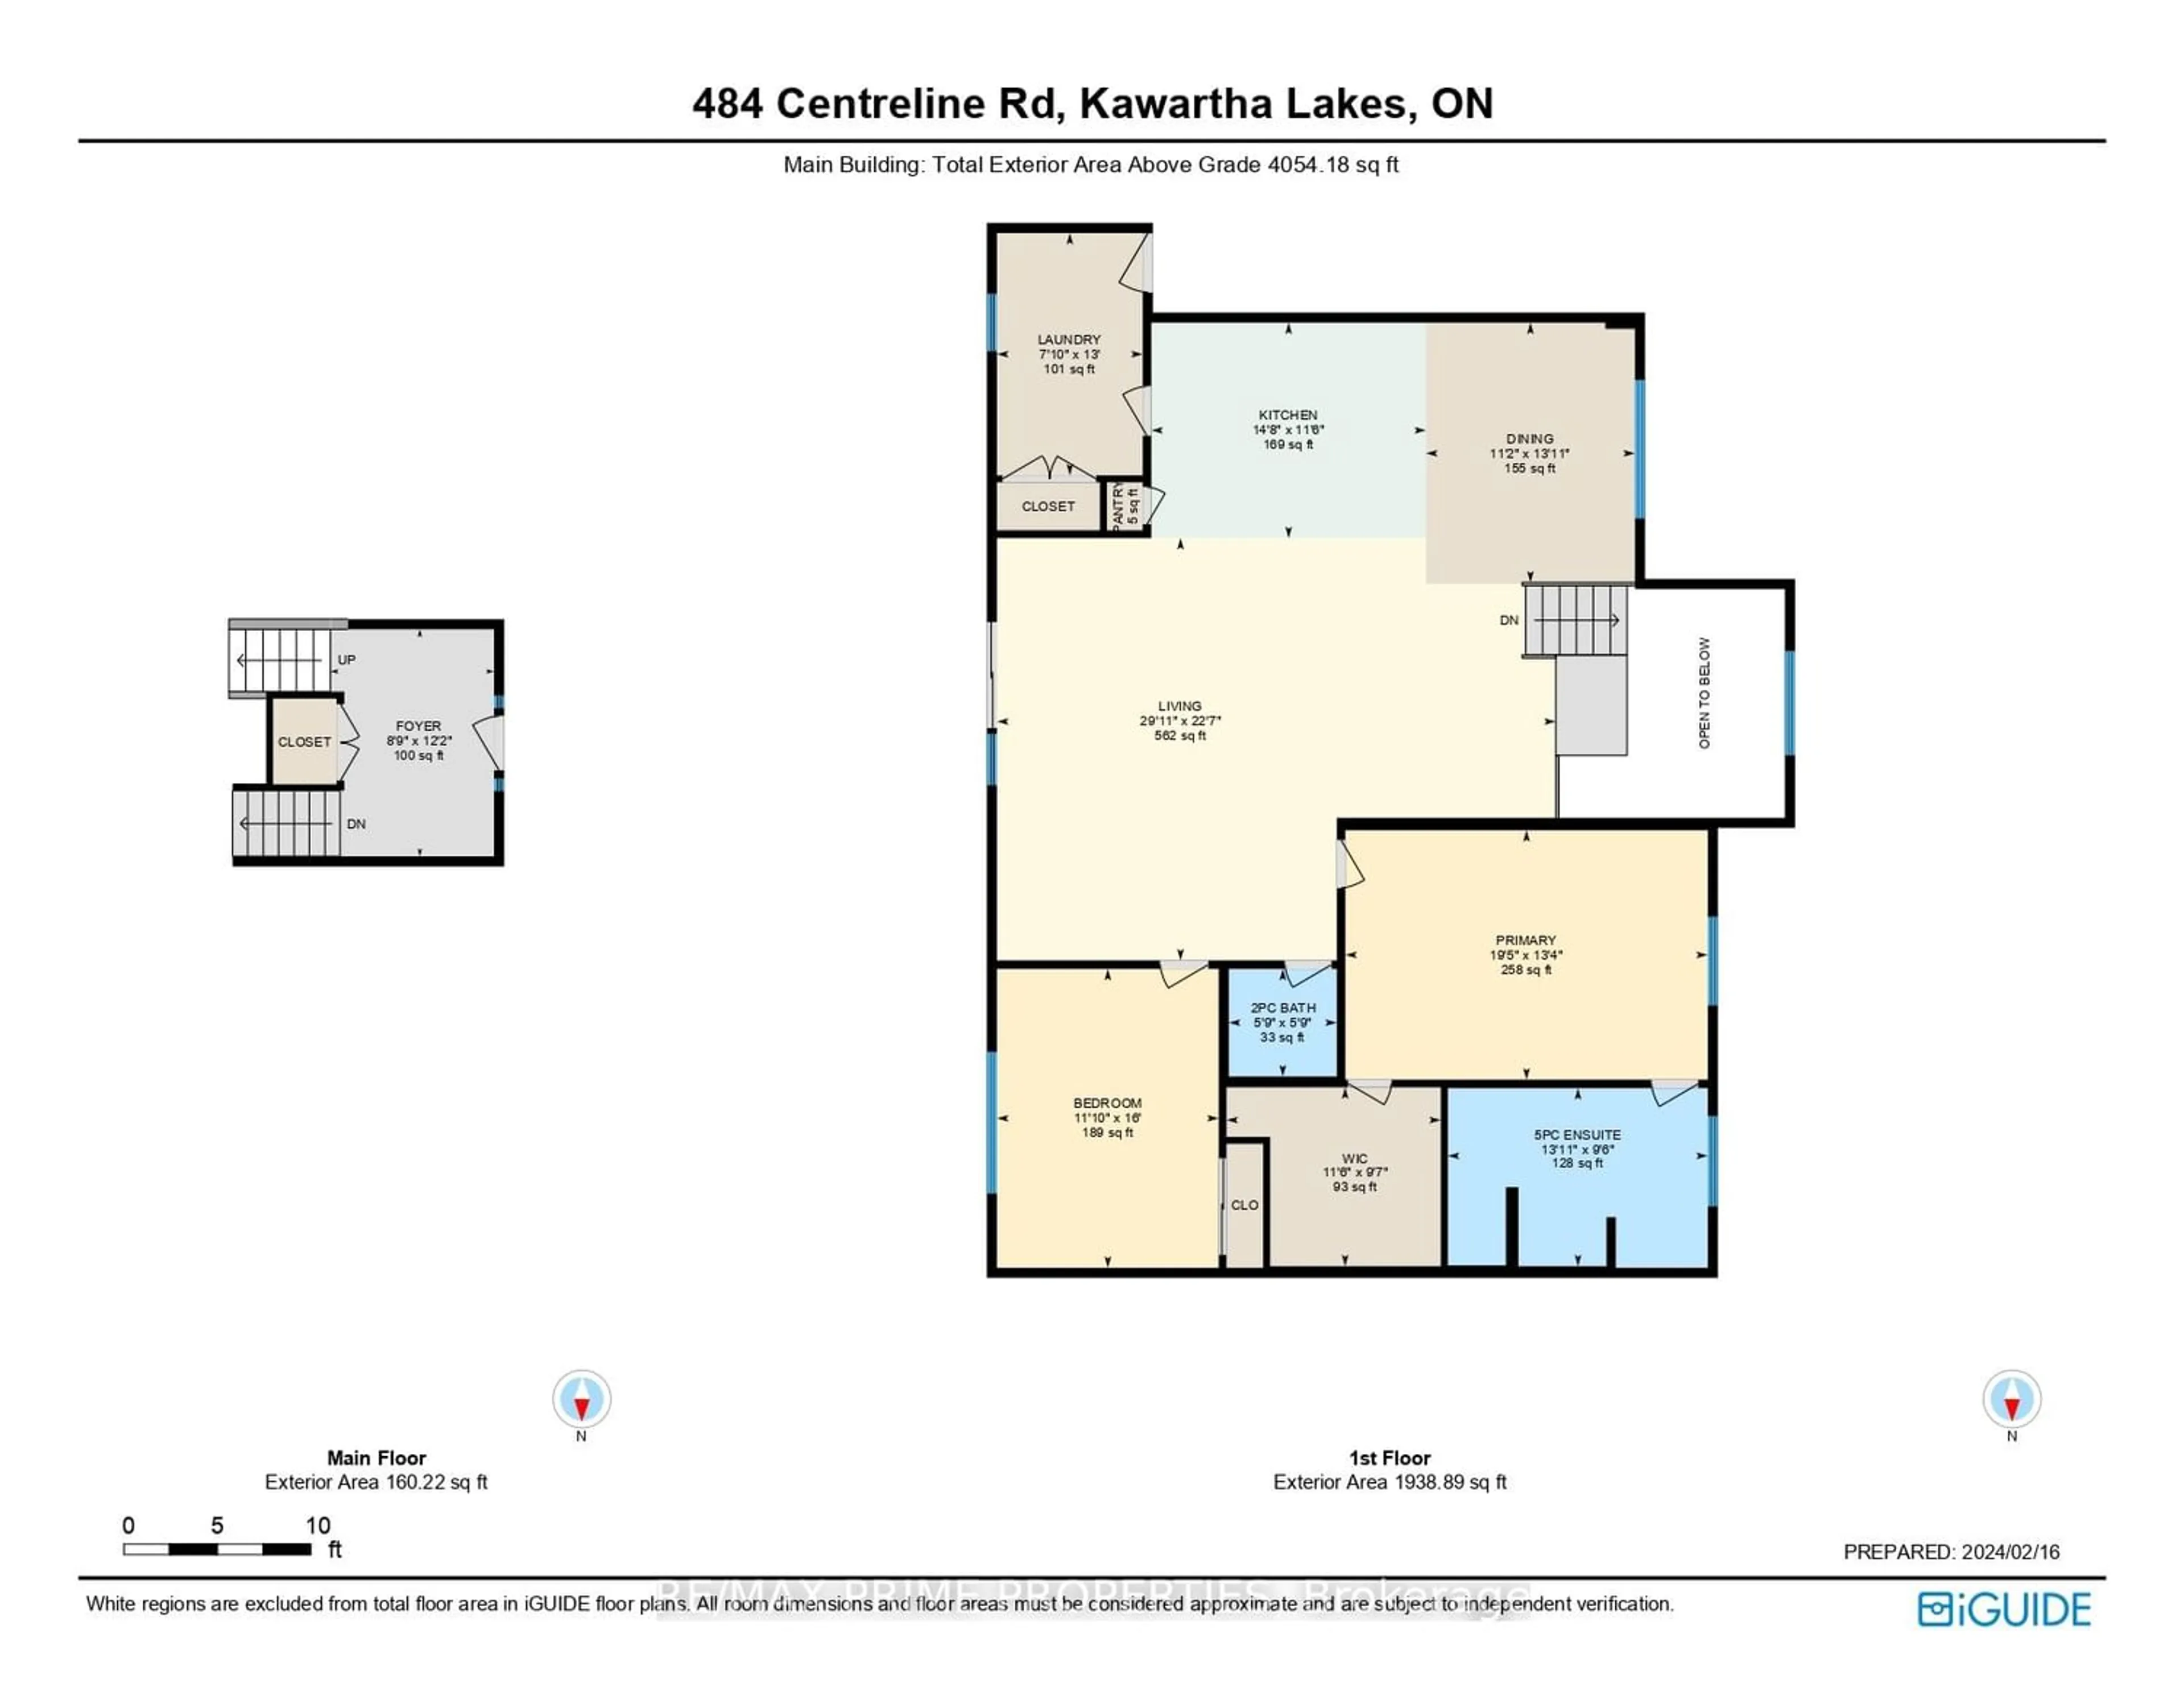 Floor plan for 484 Centreline Rd, Kawartha Lakes Ontario K9V 4R5